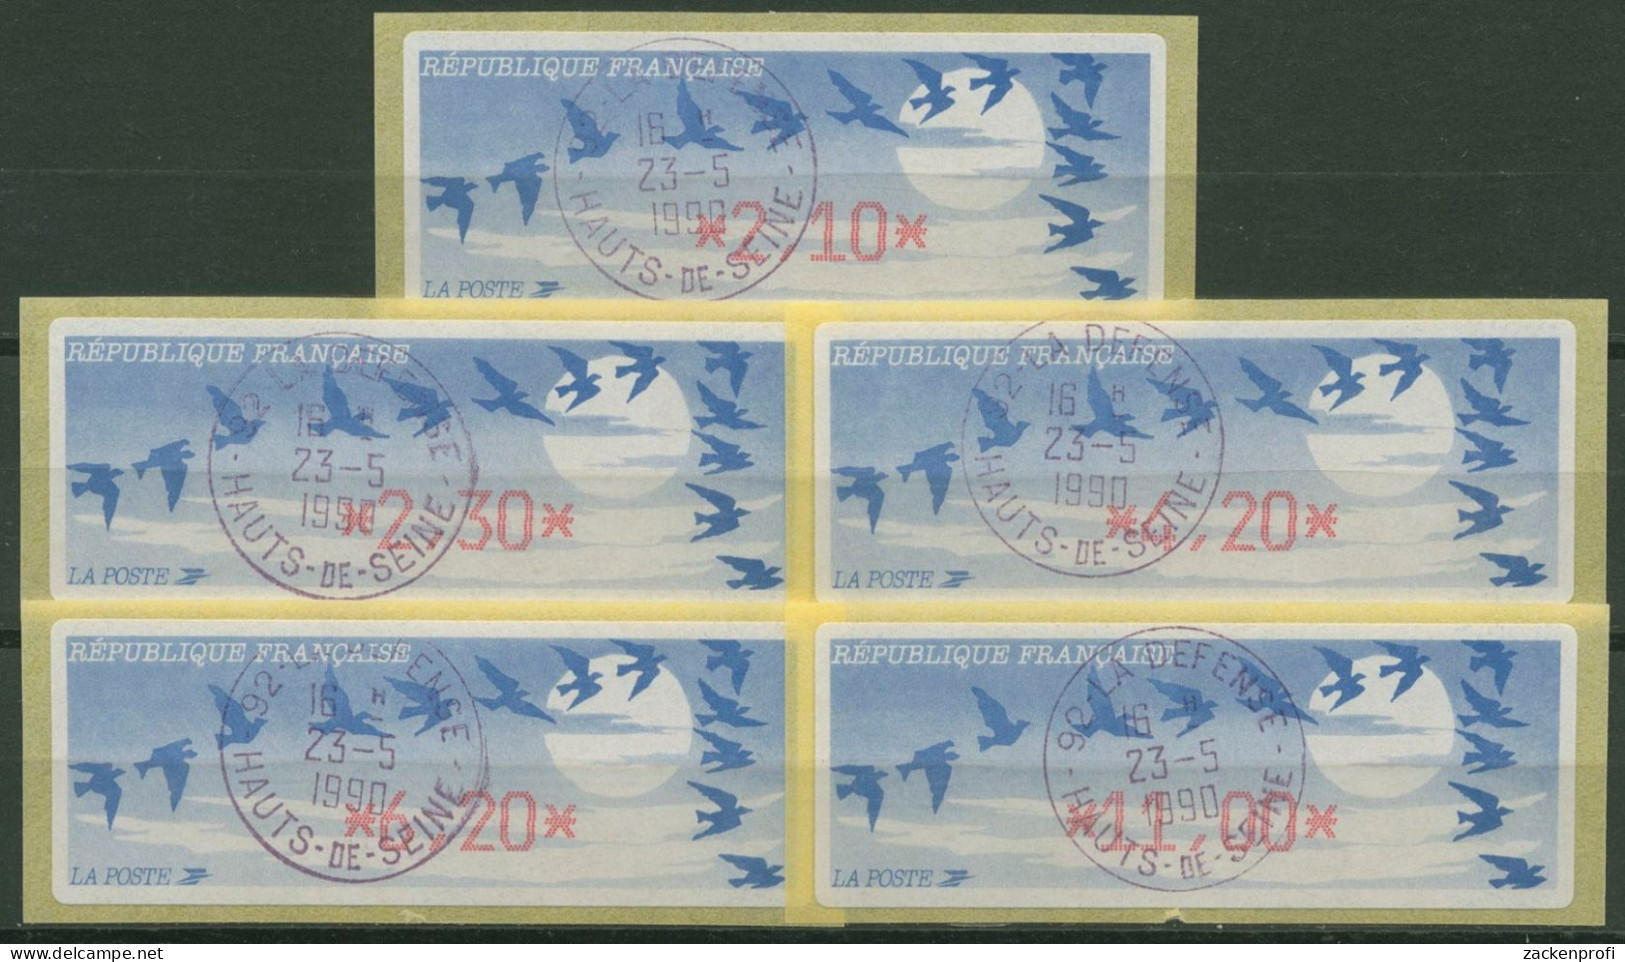 Frankreich ATM 1990 Vogelzug Satz 5 Werte ATM 11.1 B S Gestempelt - 1985 Papier « Carrier »